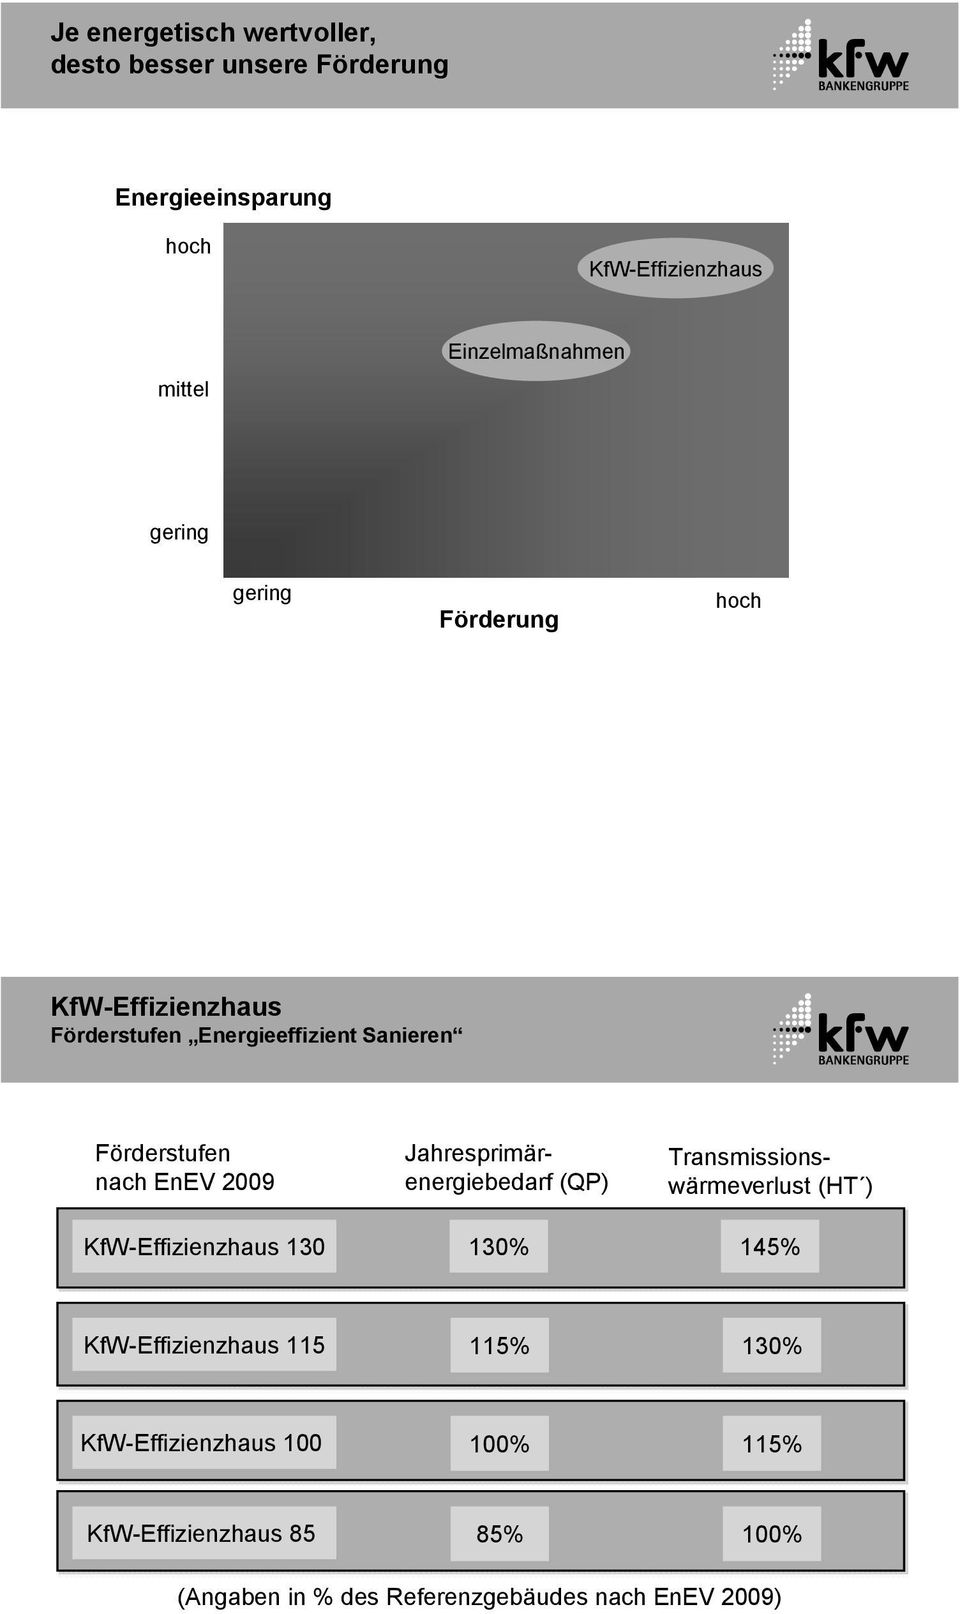 nach EnEV 2009 KfW-Effizienzhaus 130 Jahresprimärenergiebedarf (QP) 130% Transmissionswärmeverlust (HT ) 145%